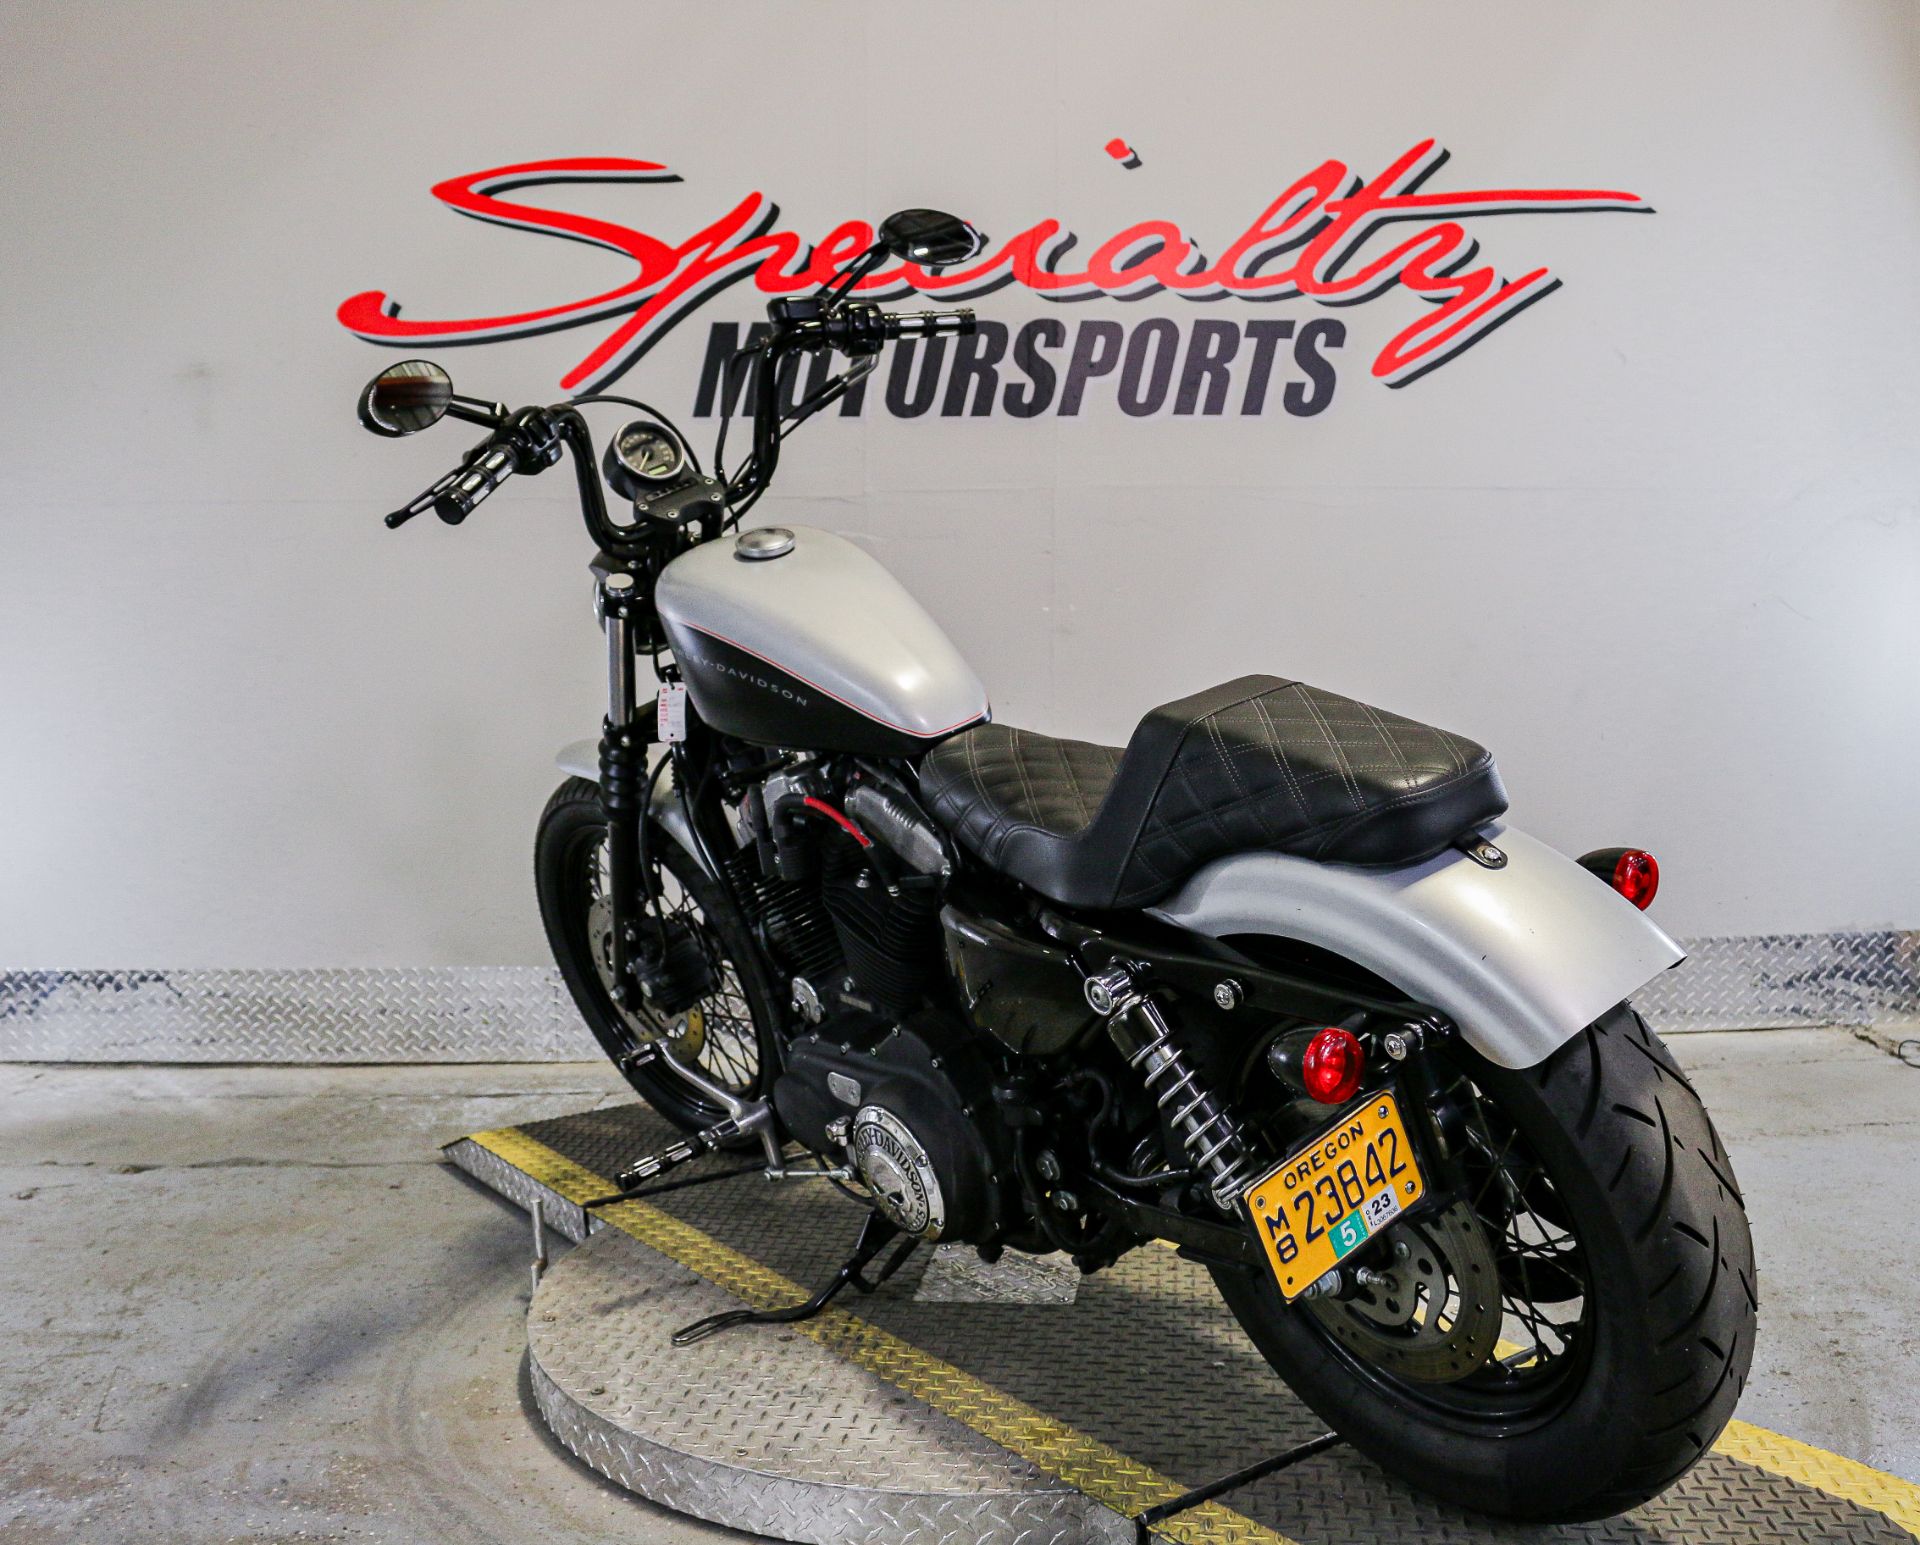 2007 Harley-Davidson Sportster® 1200 Nightster™ in Sacramento, California - Photo 3